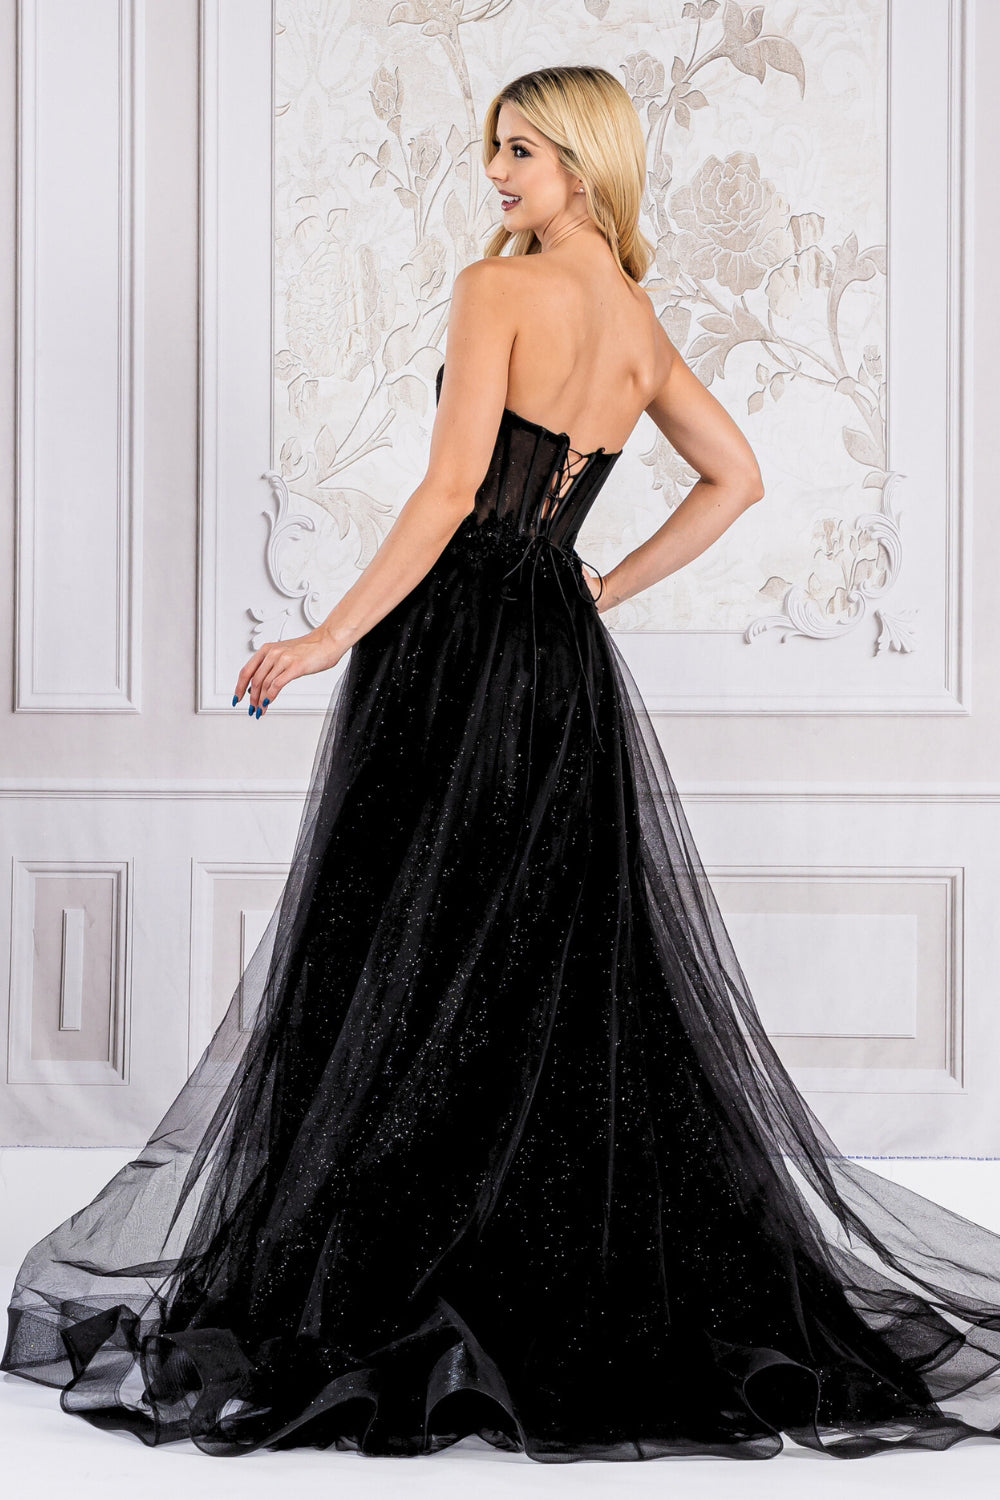 Nicole Scherzinger Black Strapless Evening Gown